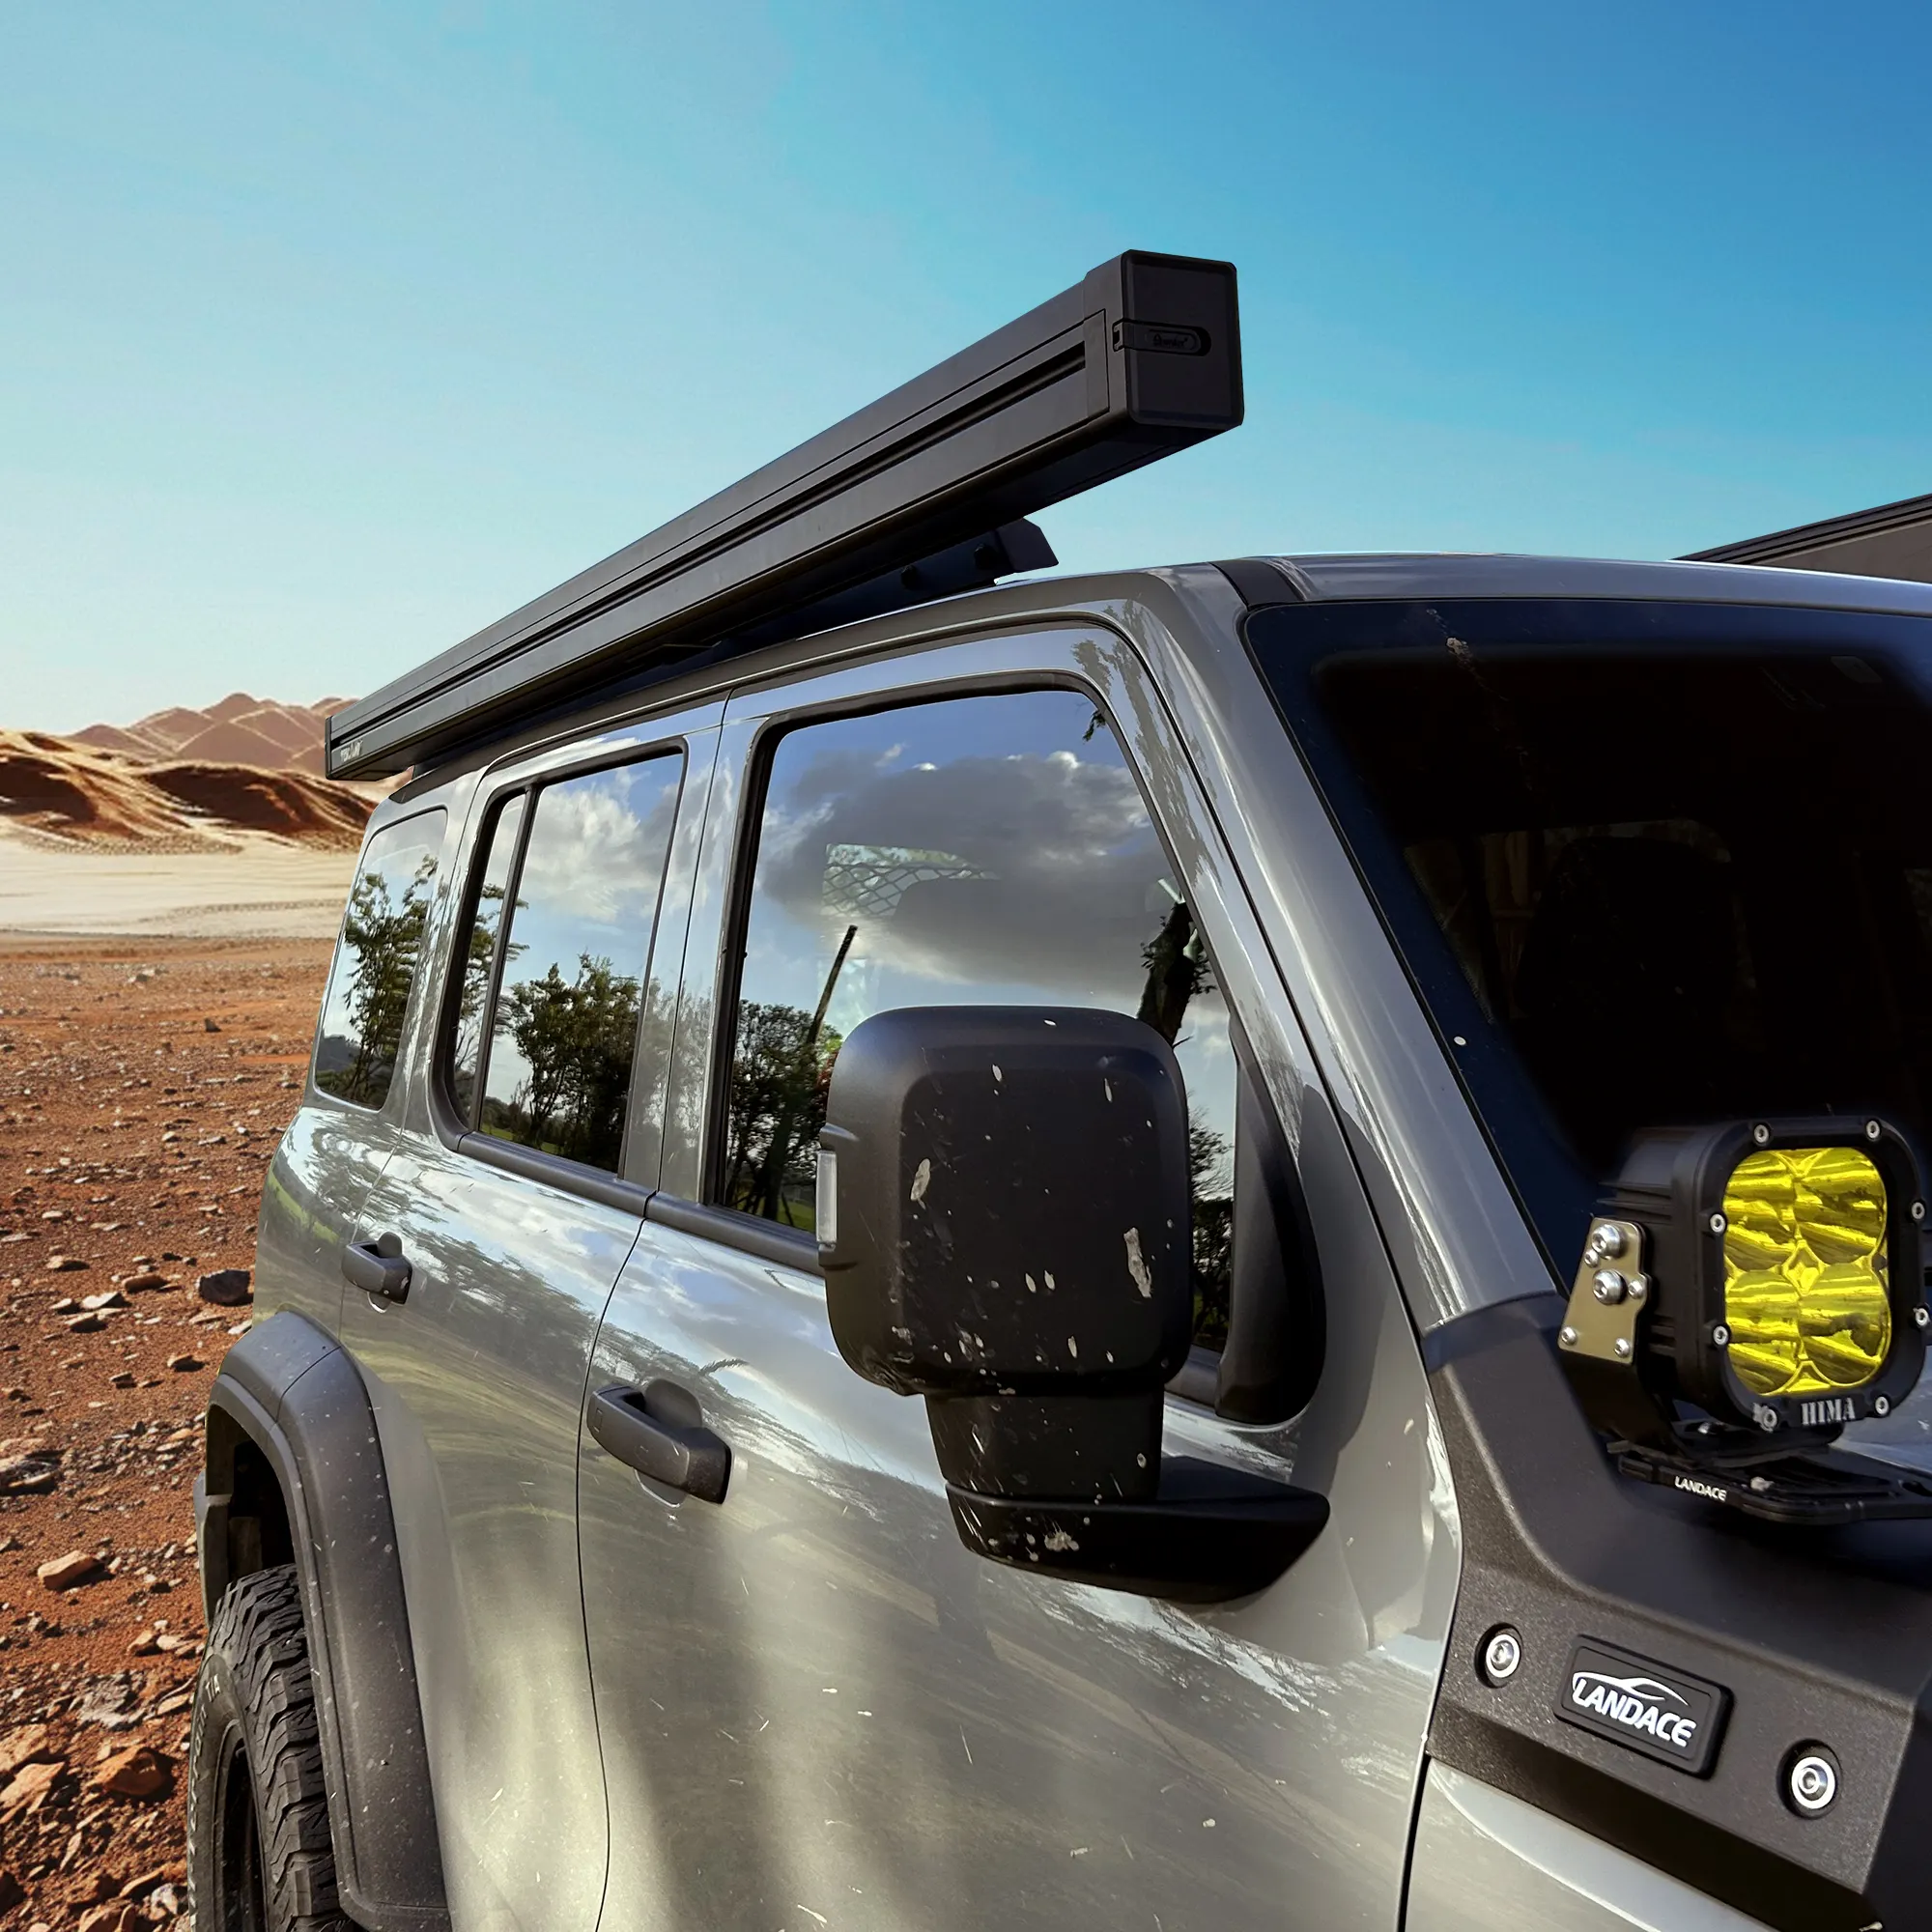 Awnlux Camper araba aksesuarları 4x4 4wd güneş barınak tente kamyon araç kamp SUV tente açık arabalar için